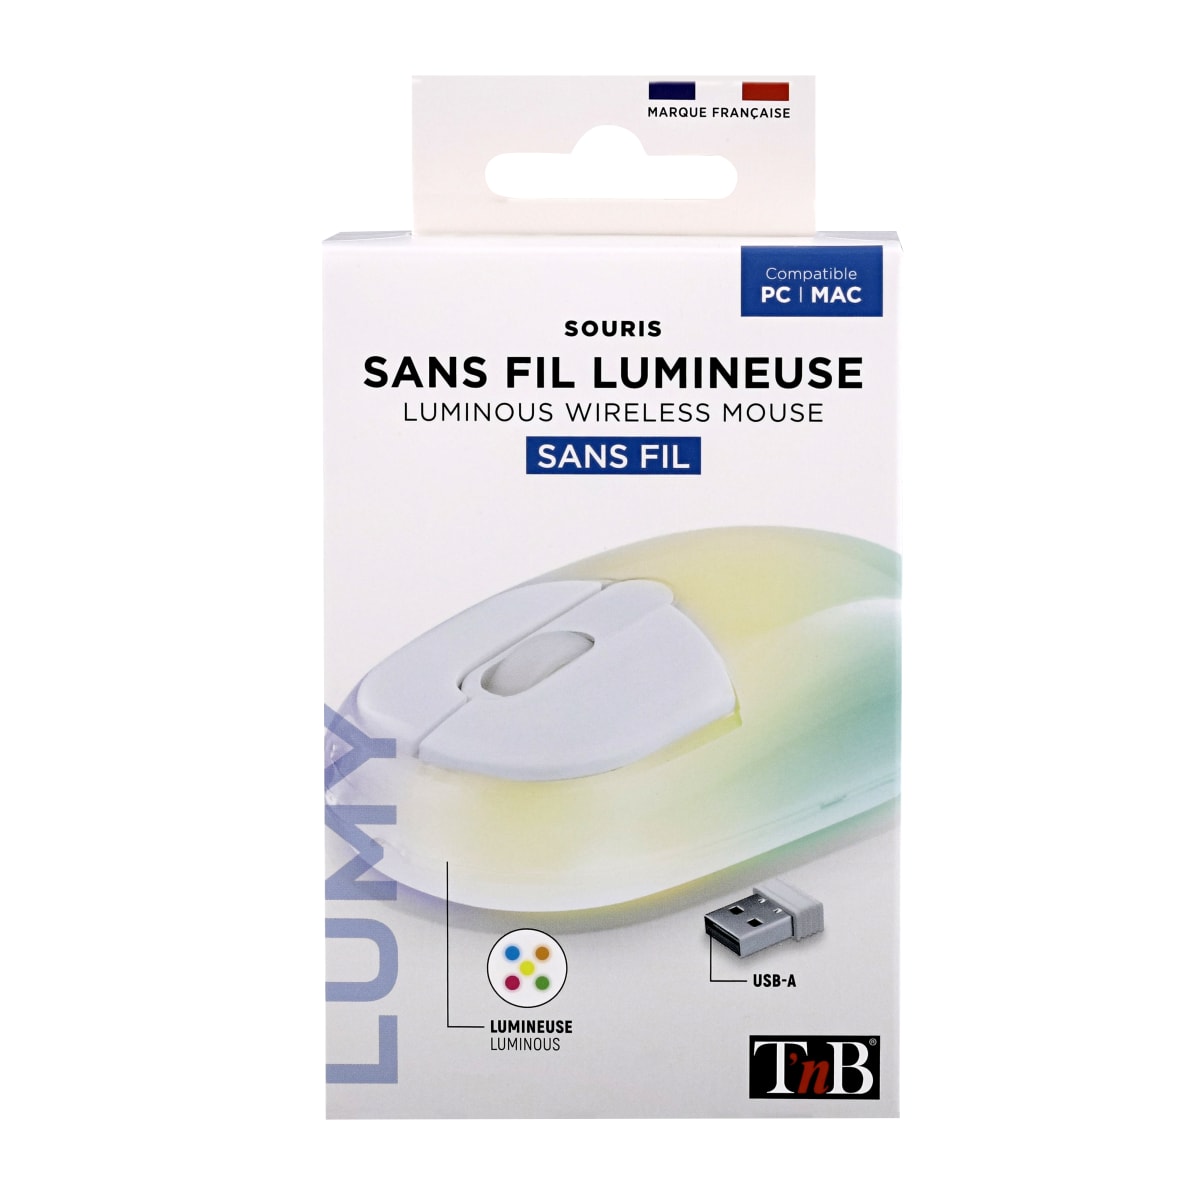 Souris sans fil - Siècle des Lumières LED - Souris sans fil